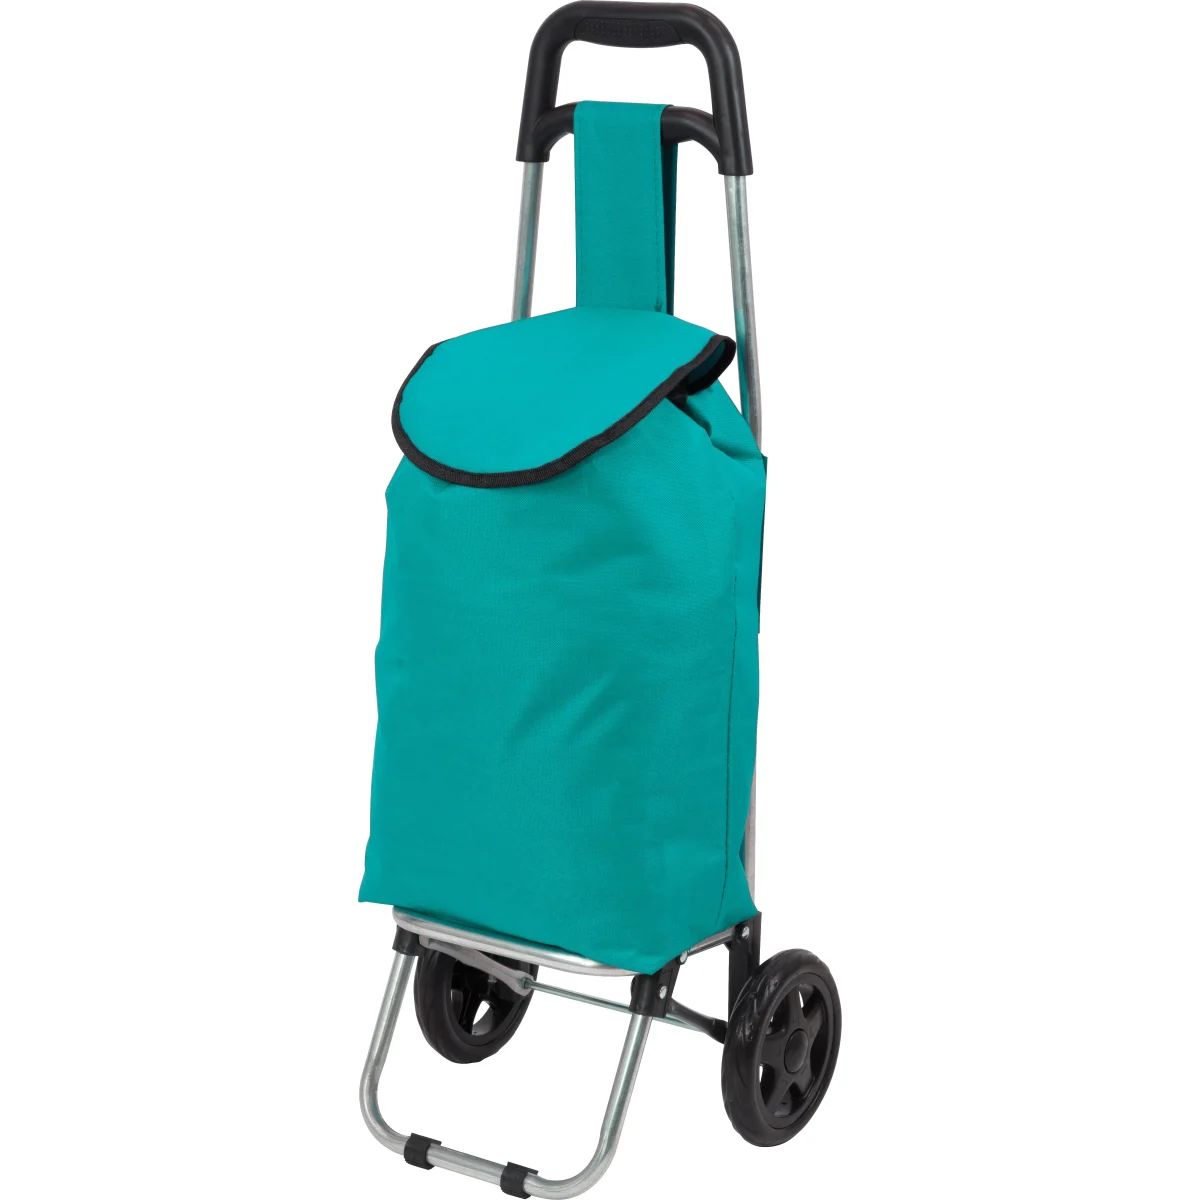 Тележка с сумкой WR3030 Бирюза, 15 кг тележка с сумкой d203 green 25кг